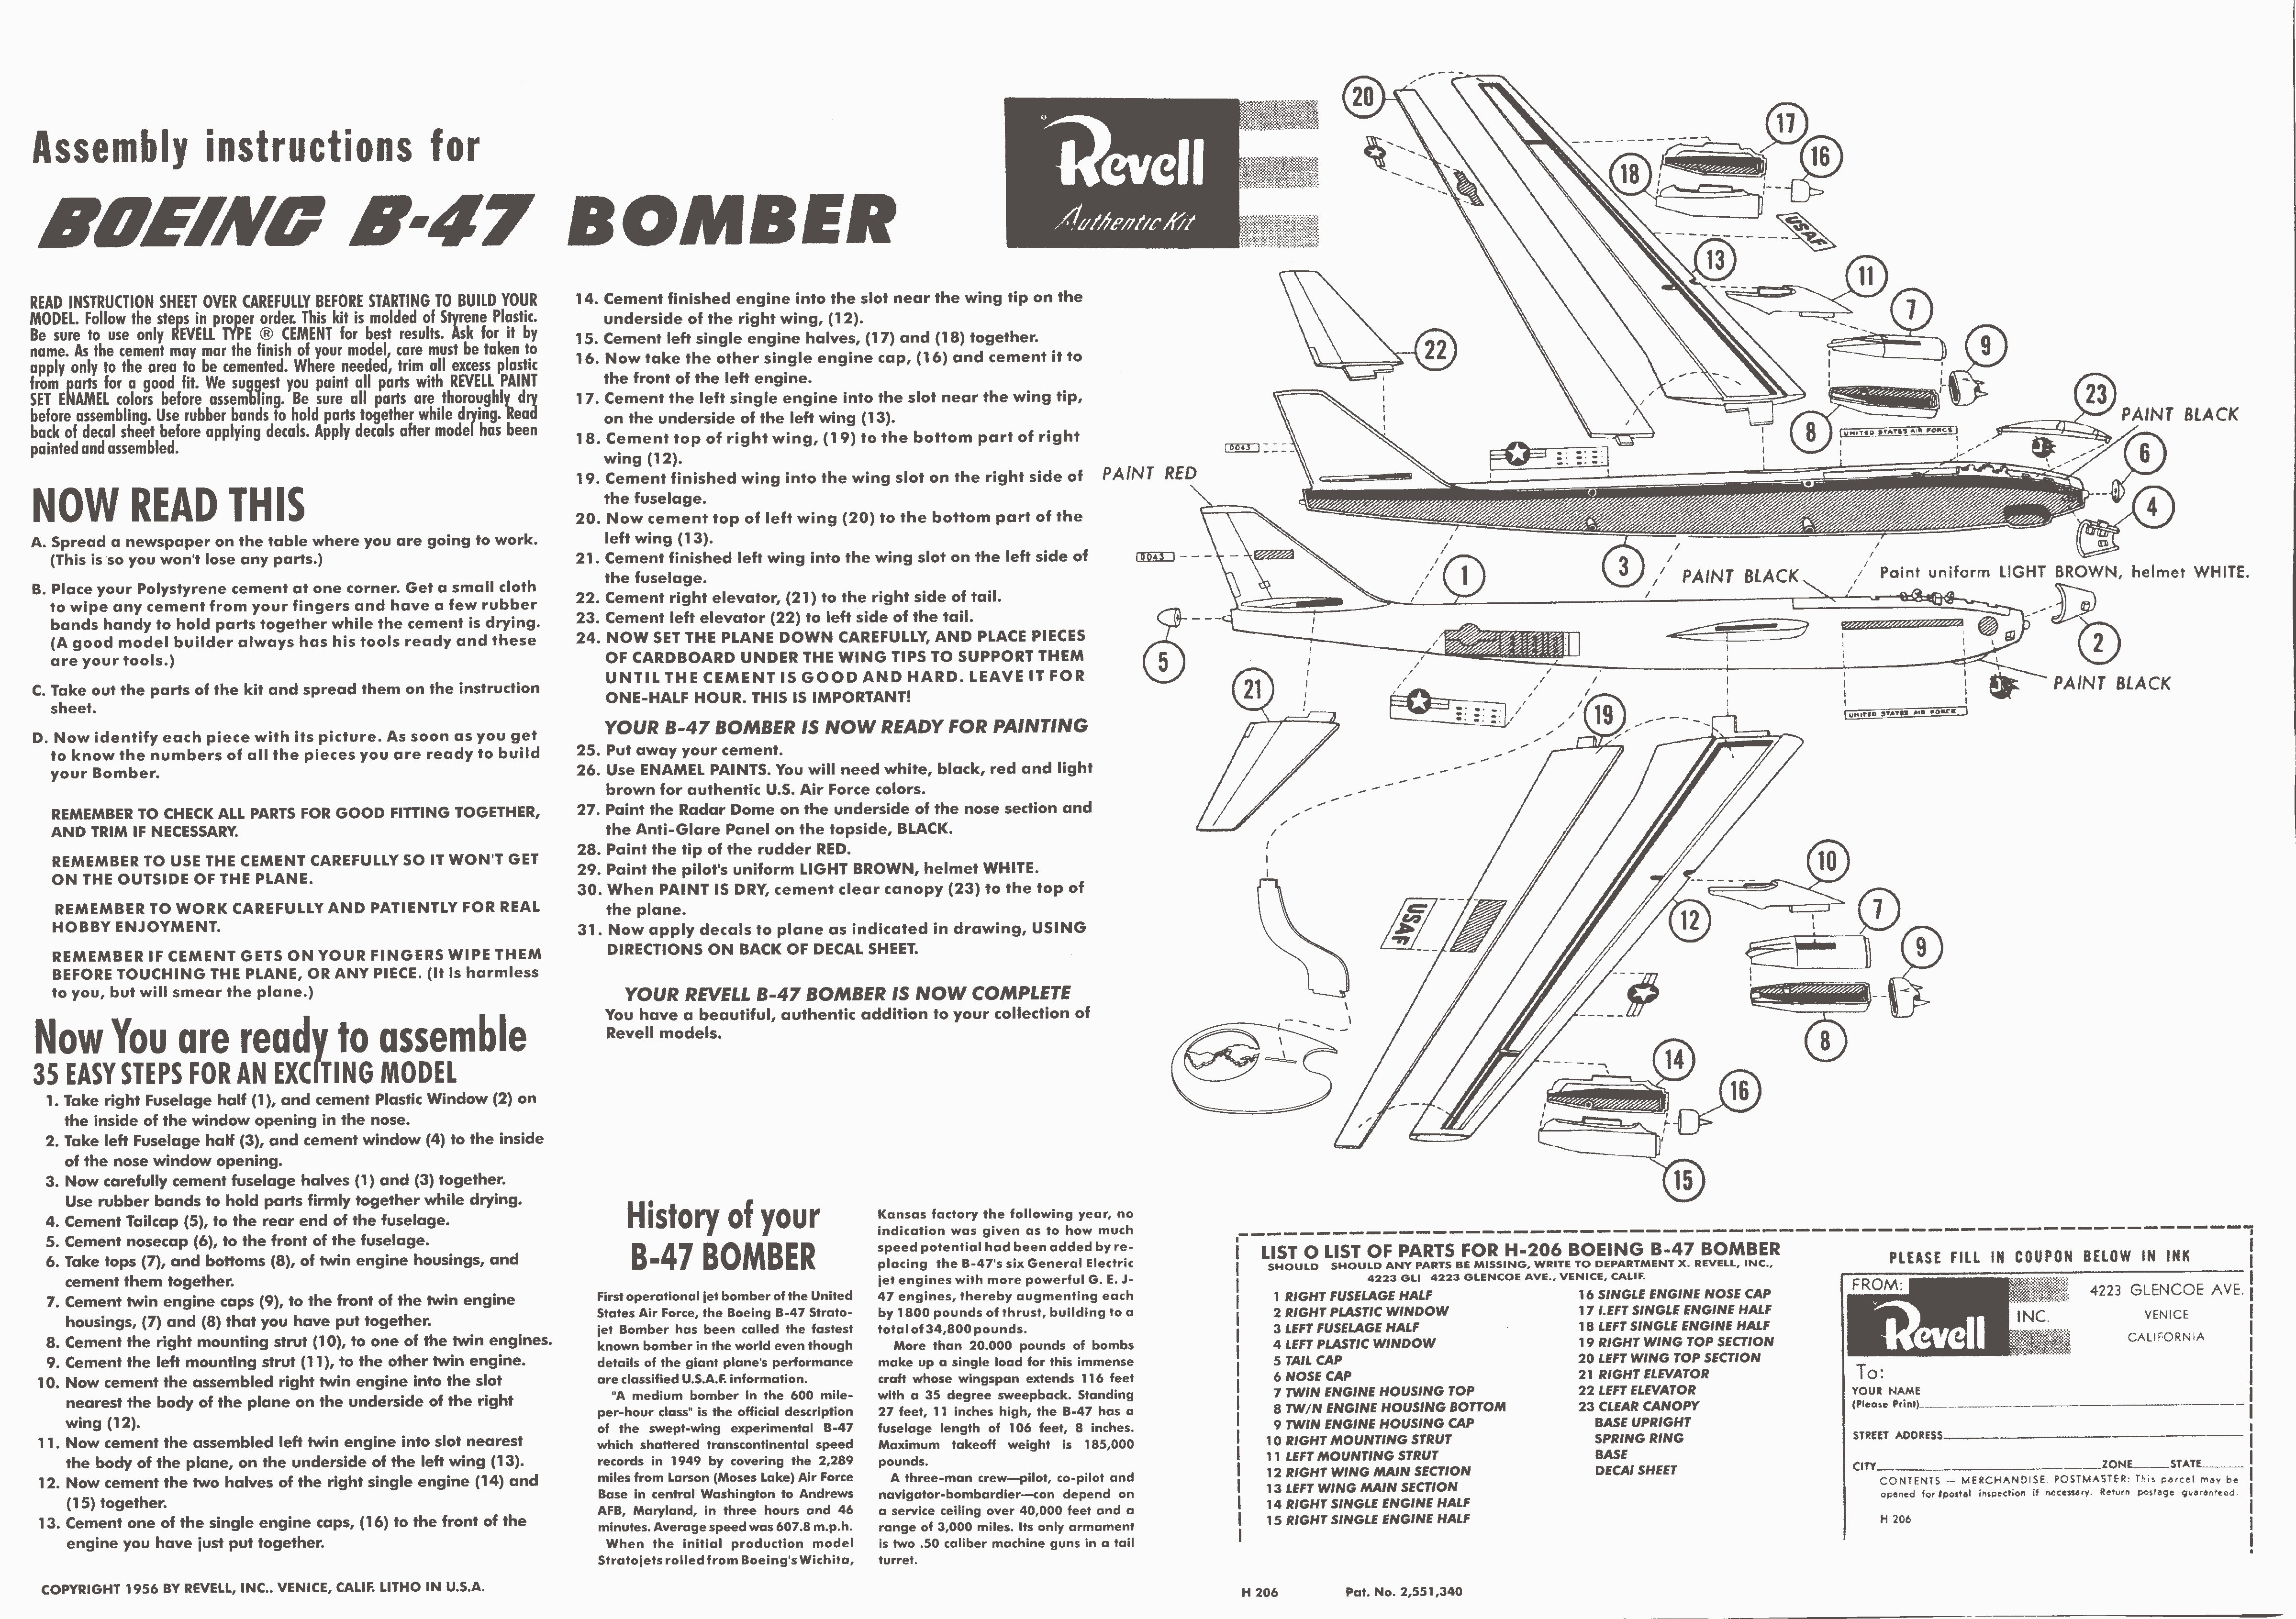 Assembly instructions Revell H206 Boeing B-47 Giant Stratojet Bomber, Revell Inc, 1954